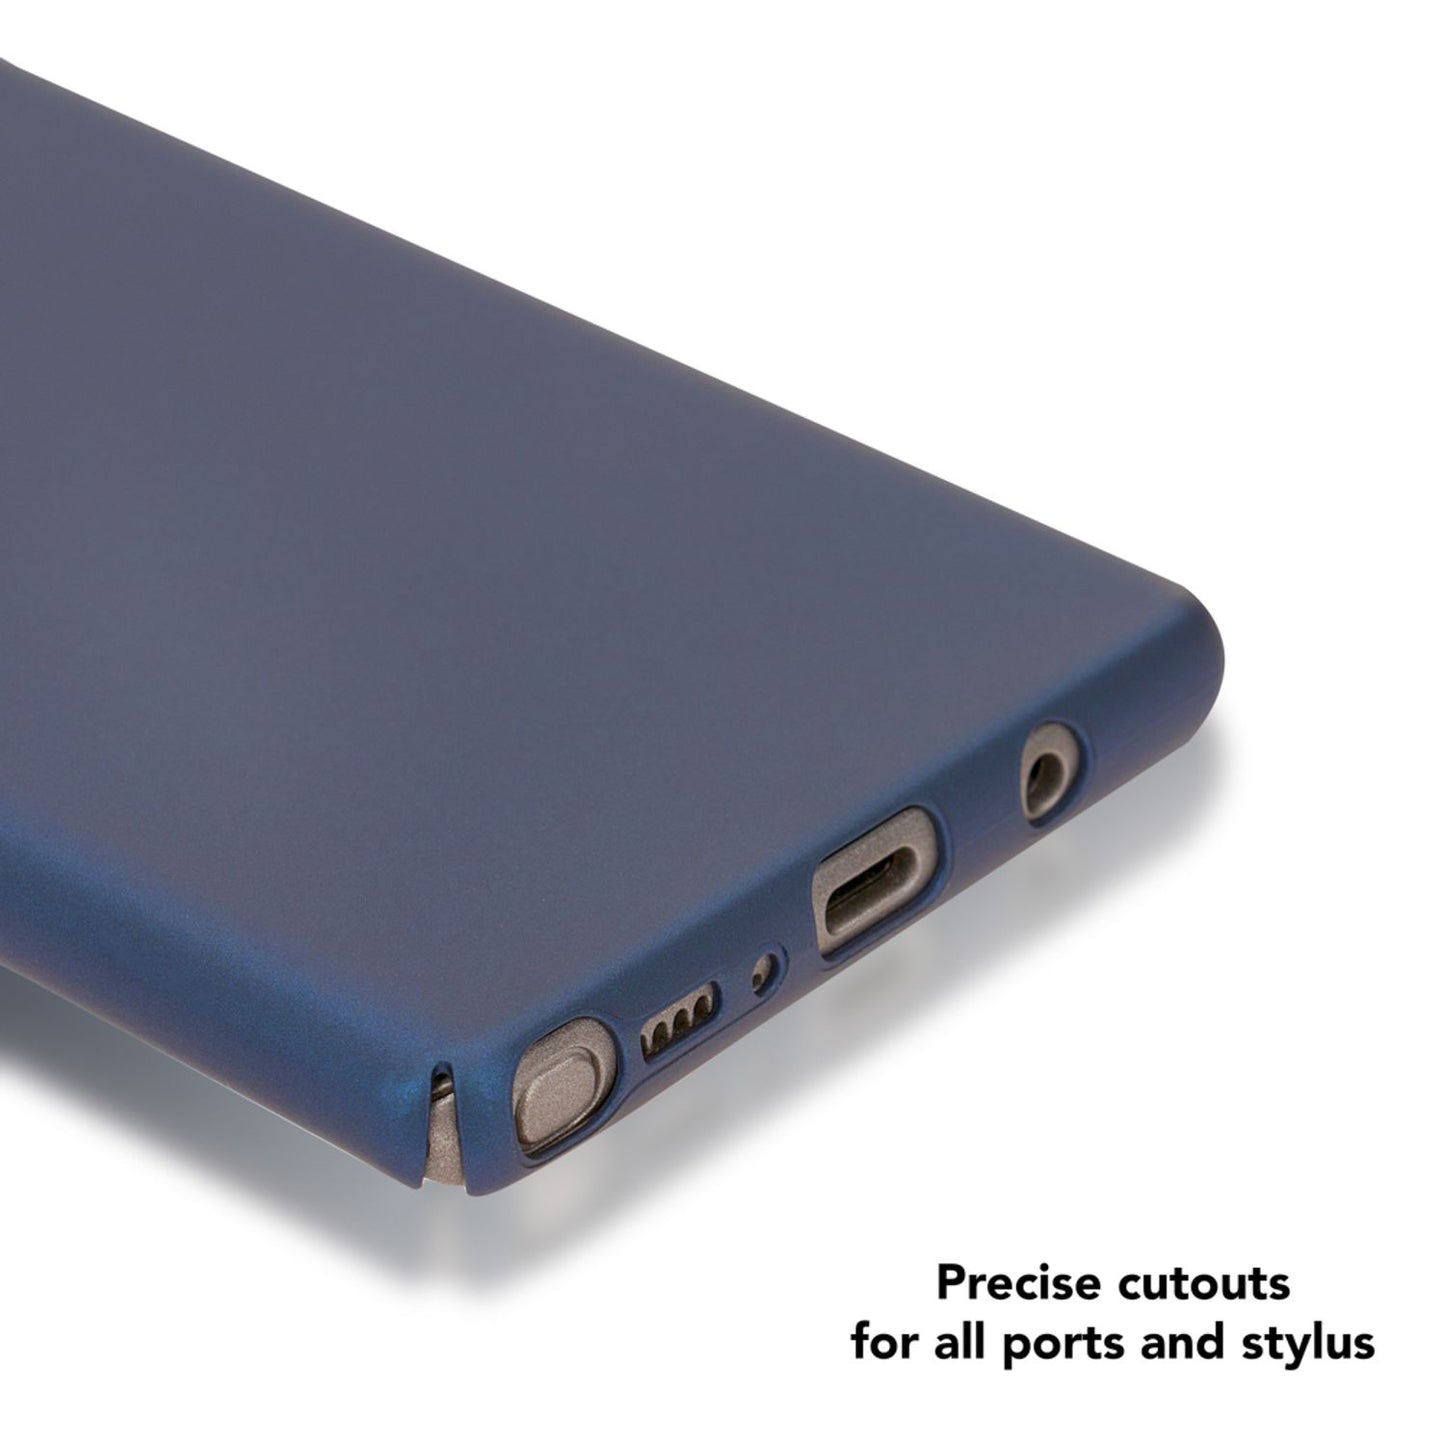 Samsung Galaxy Note 8 Hülle Handyhülle von NALIA, Dünne Schutzhülle Cover Hardcase